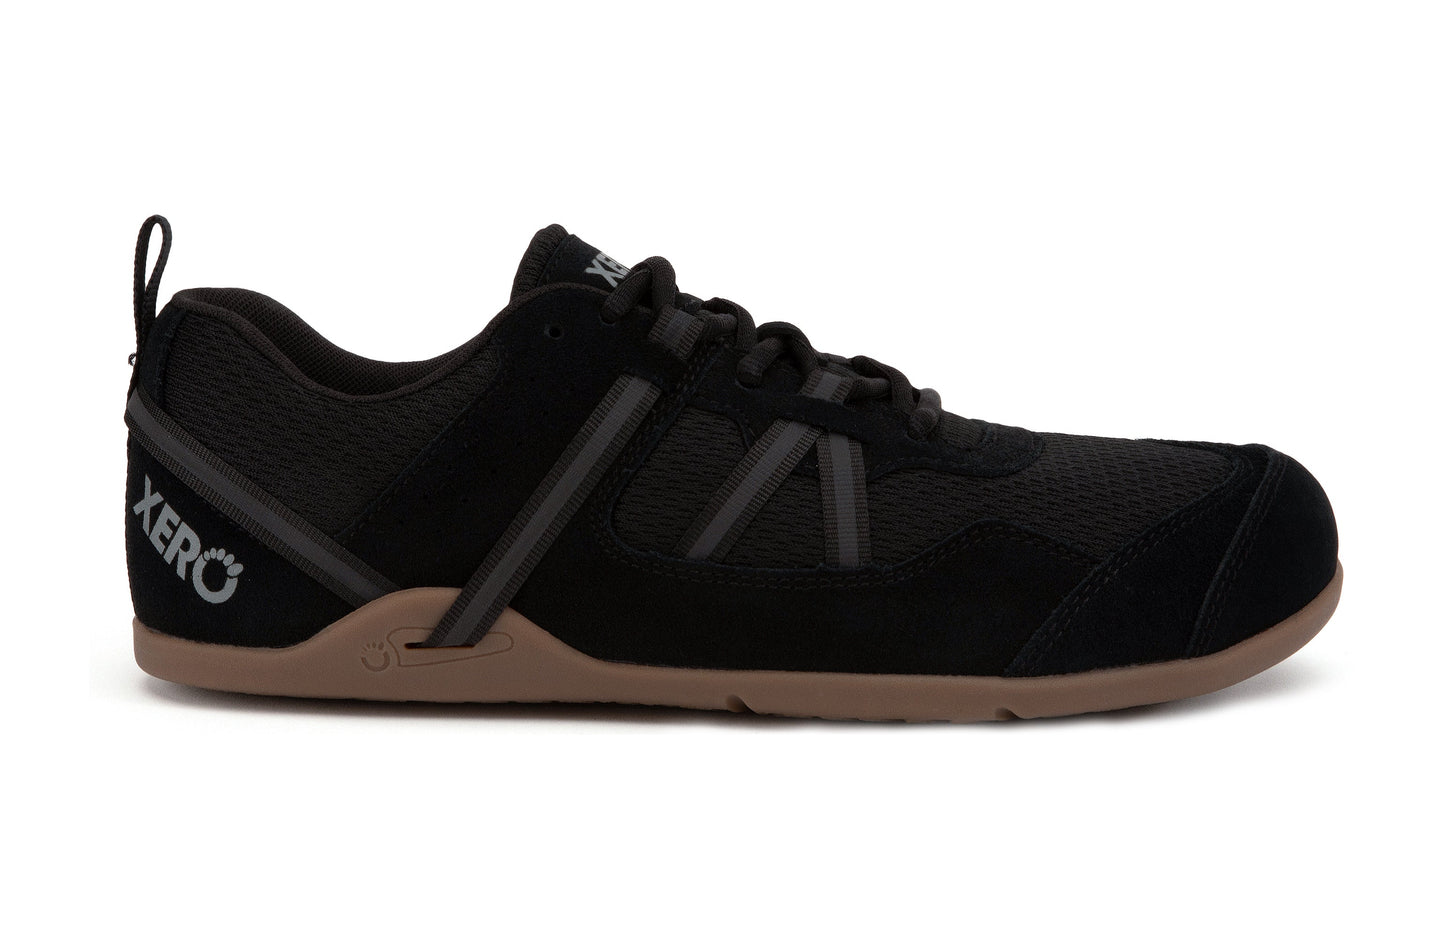 Xero Shoes Prio Suede barfods ruskind sneakers til mænd i farven black gum, yderside